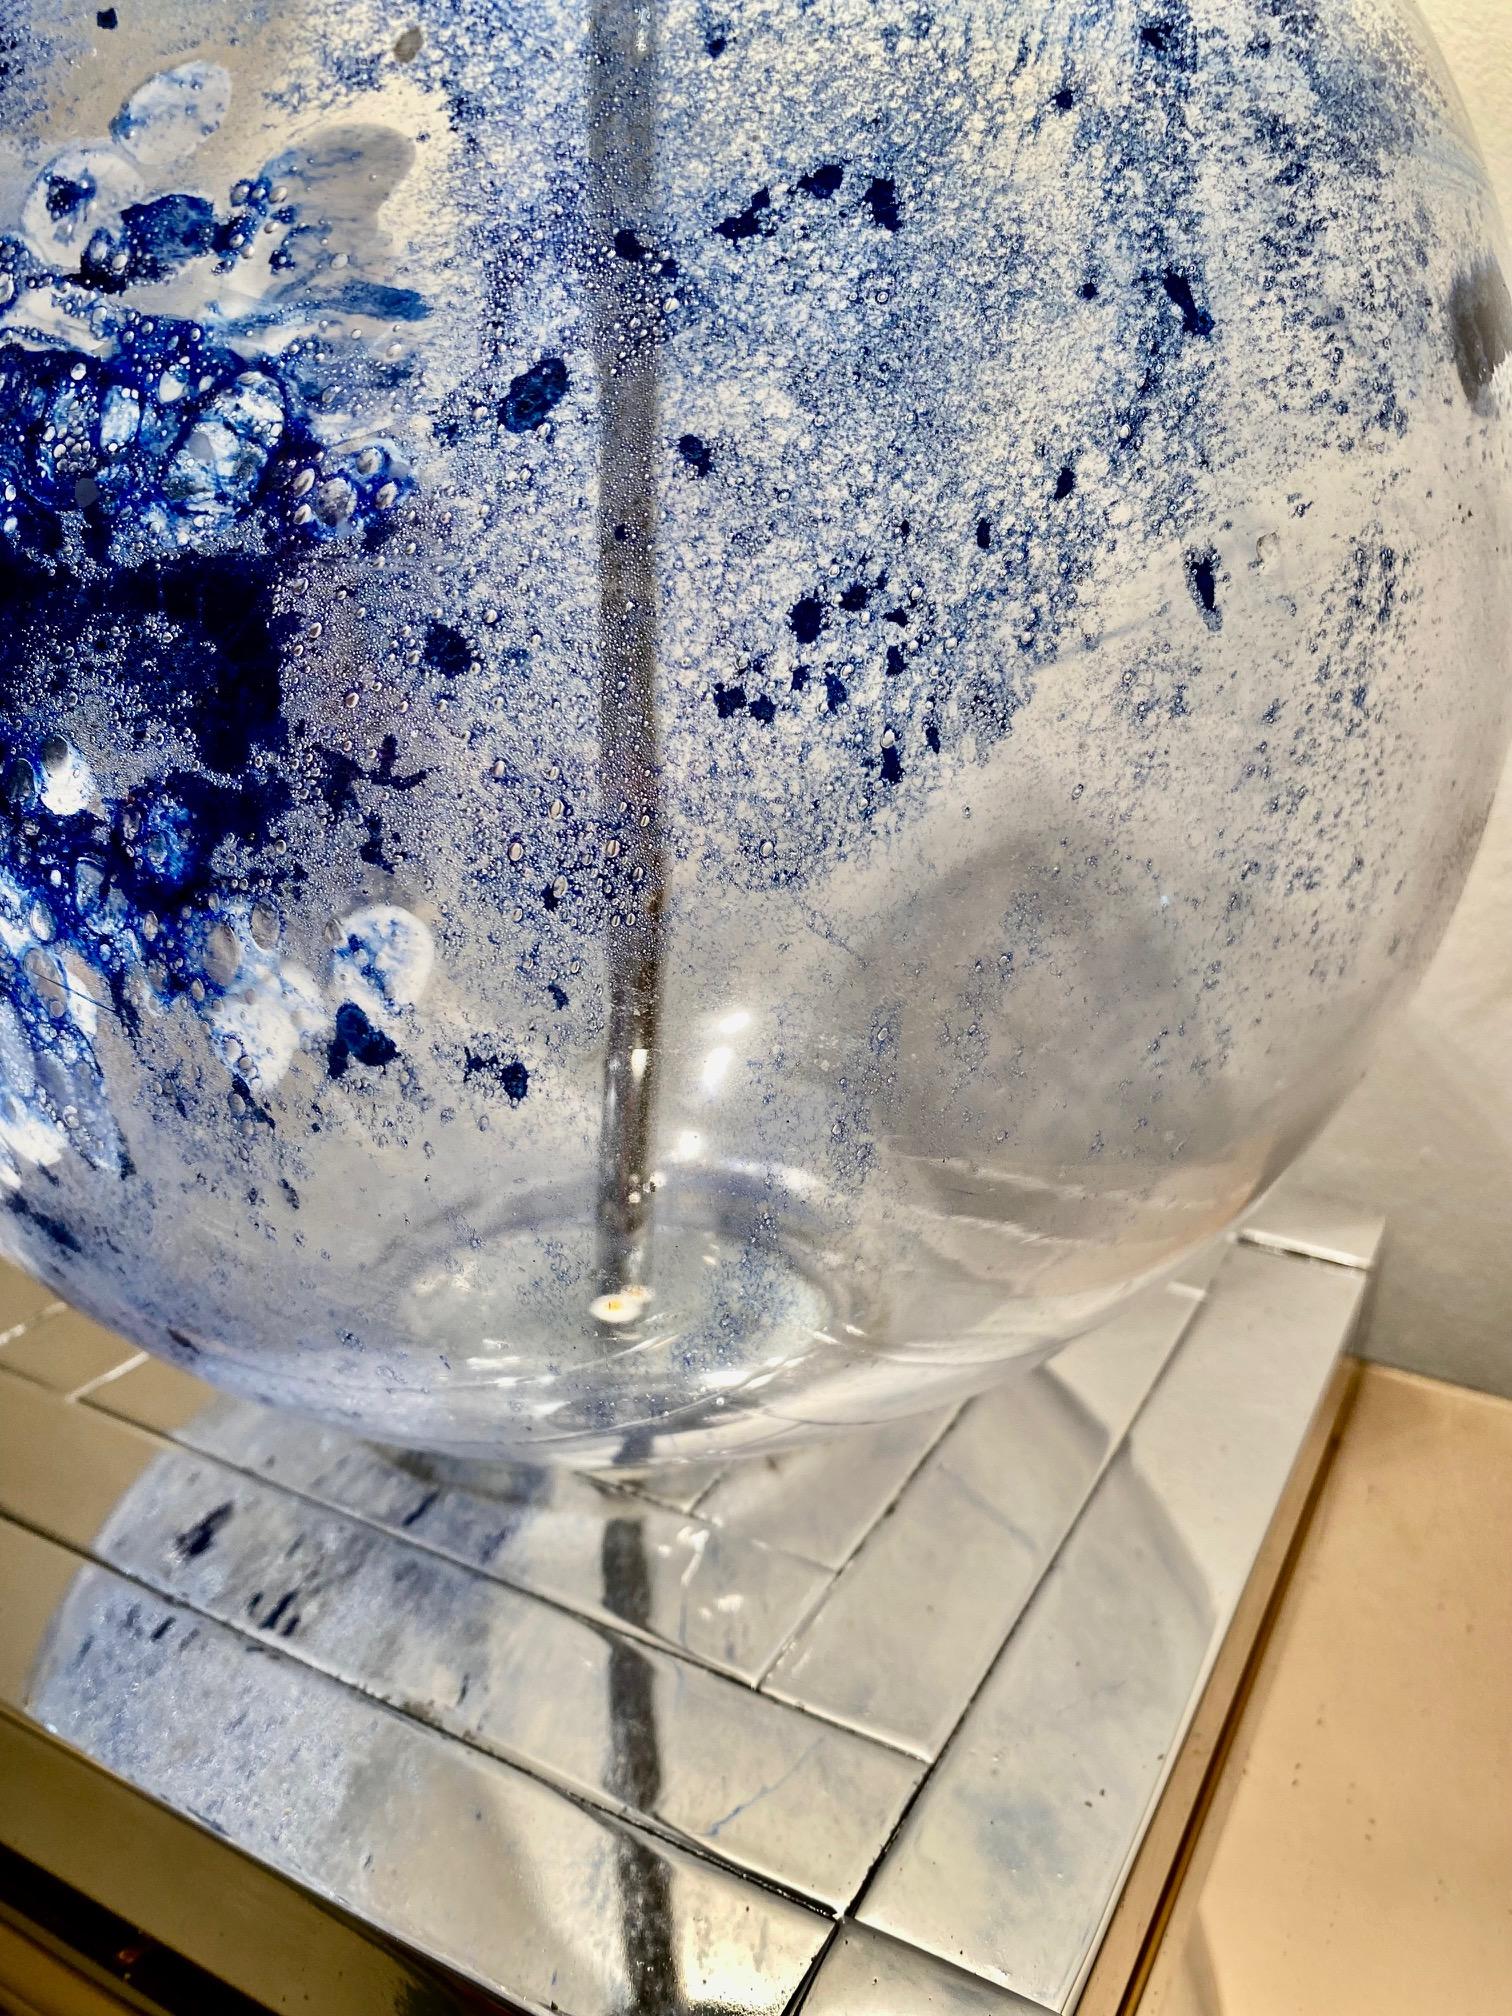 Exceptionnelle lampe de table Mazzega de Lumica, avec un grand verre Murano et une structure chromée. Le design et la qualité du verre font de cette pièce le meilleur du design italien. Ces mazzega uniques en verre de Murano sont